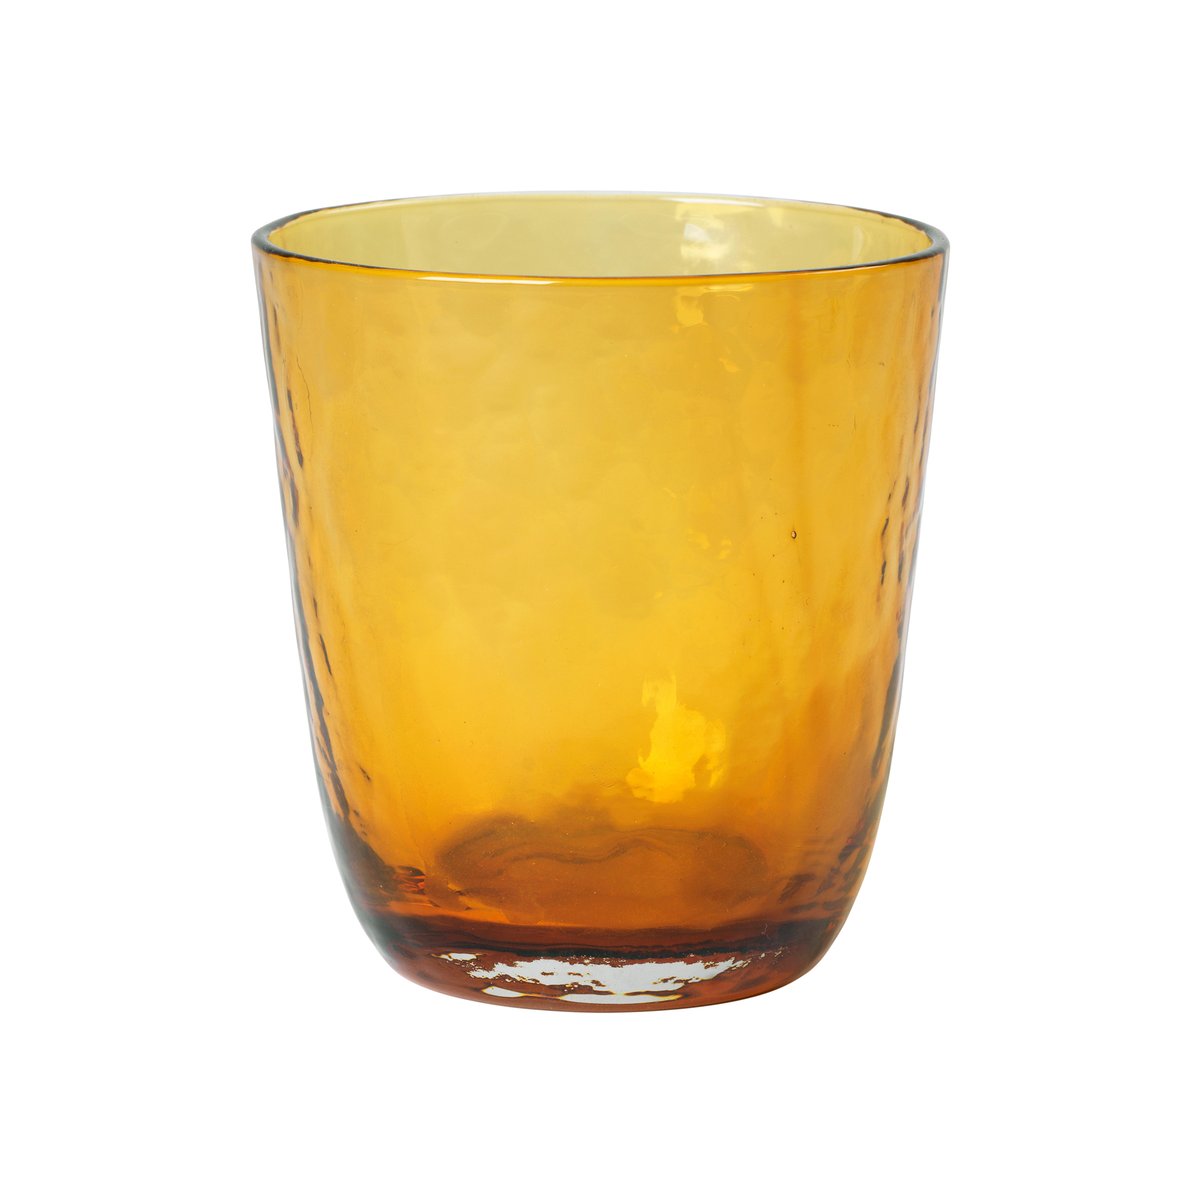 Dricksglas i amber, finns hos Nordic Nest.